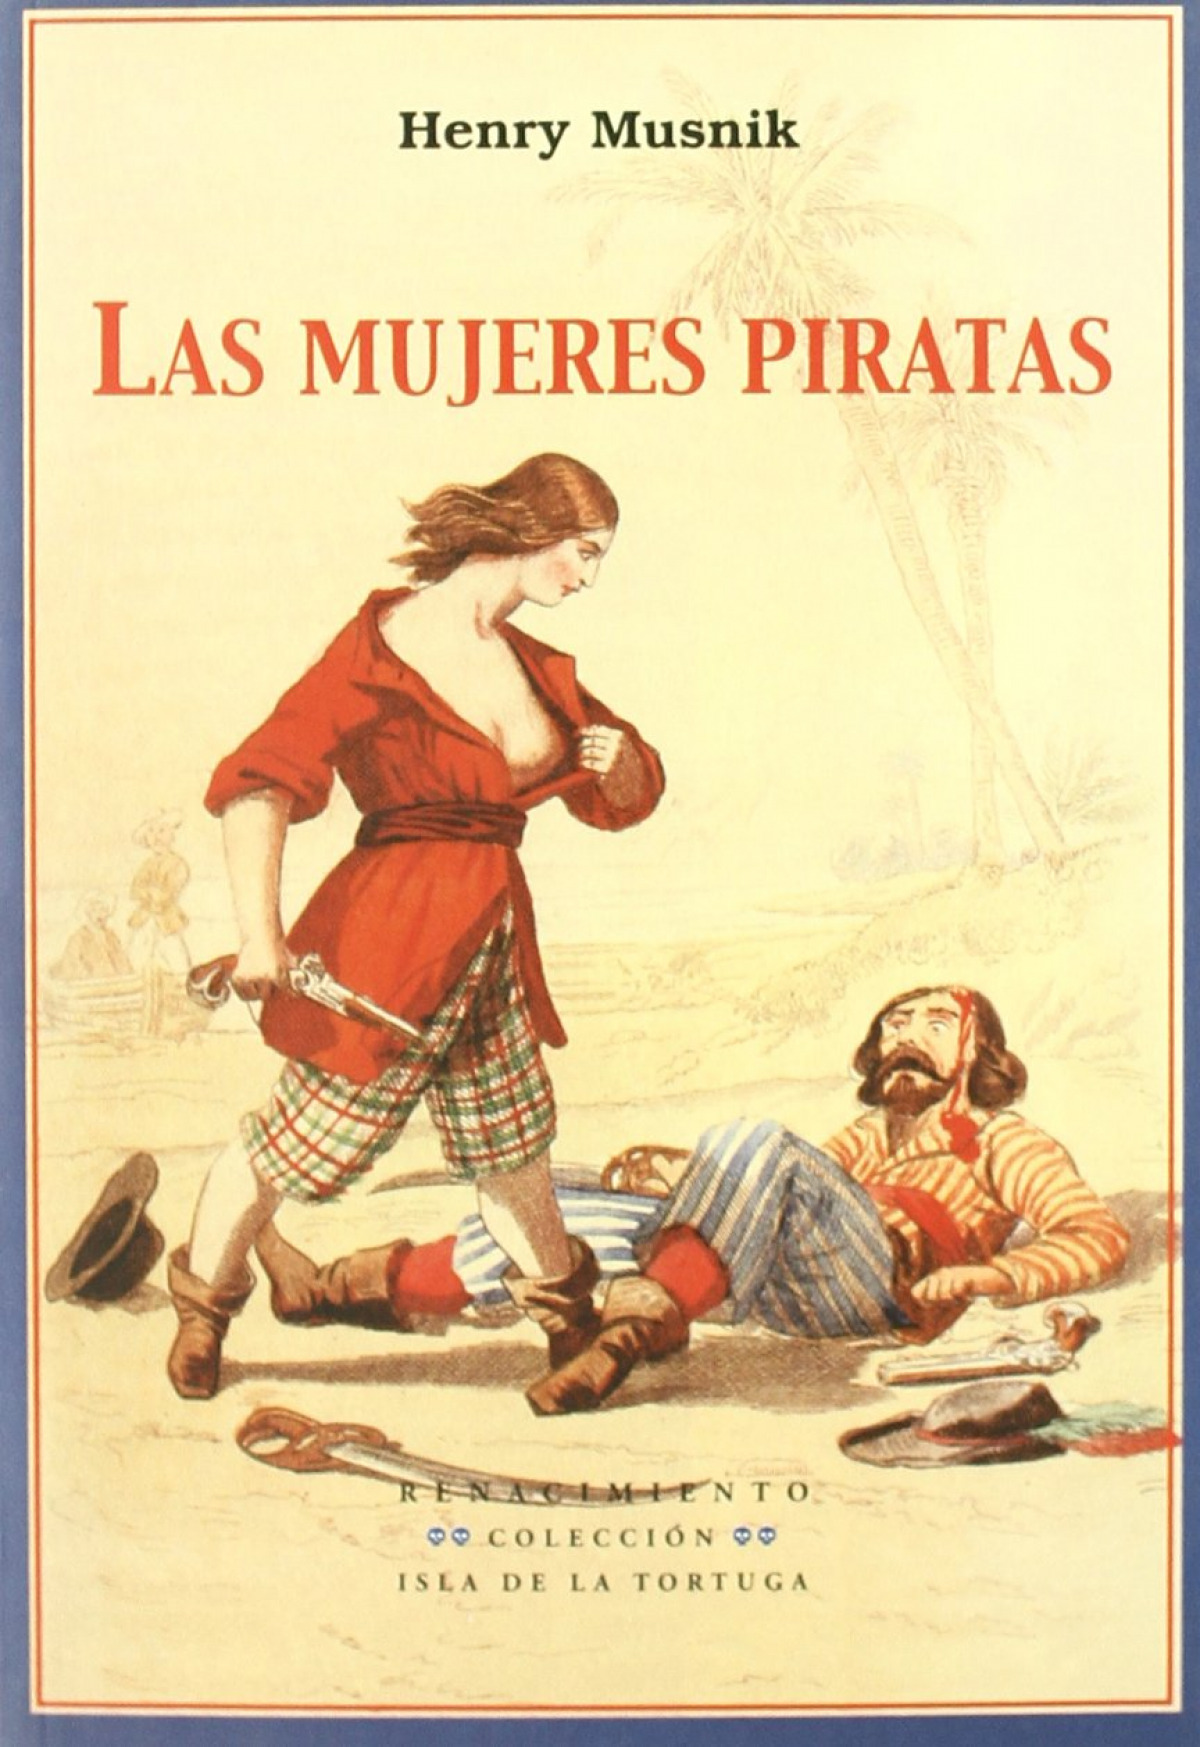 Mujeres piratas - Musnik, Henry